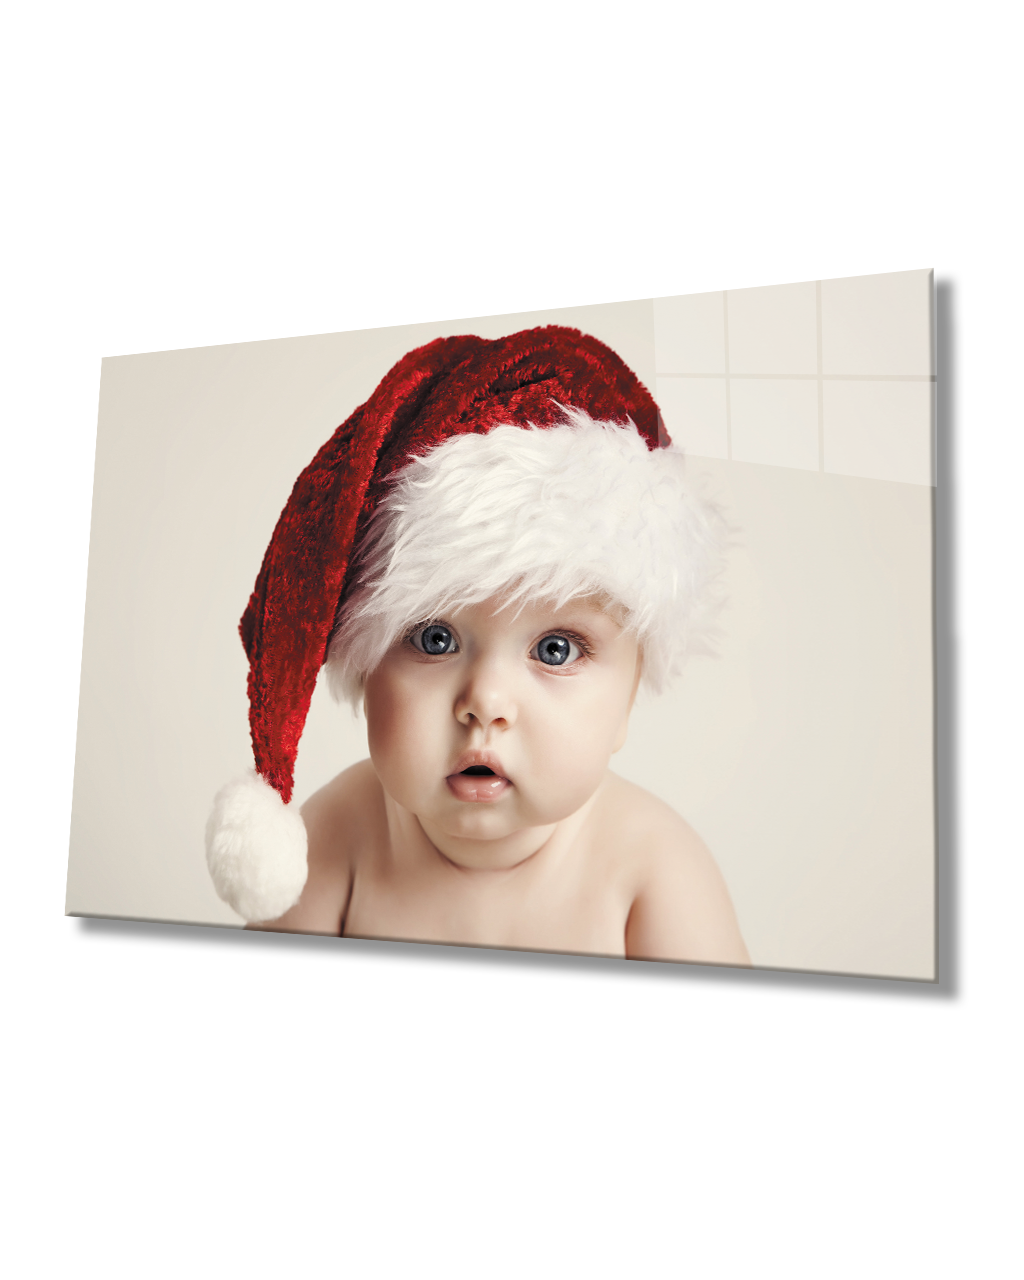 Noel Şapkalı Bebek Cam Tablo  4mm Dayanıklı Temperli Cam Noel Şapkalı Bebek Cam Tablo  4mm Dayanıklı Temperli Cam Baby Glass Table With Christmas Hat 4mm Durable Tempered Glass